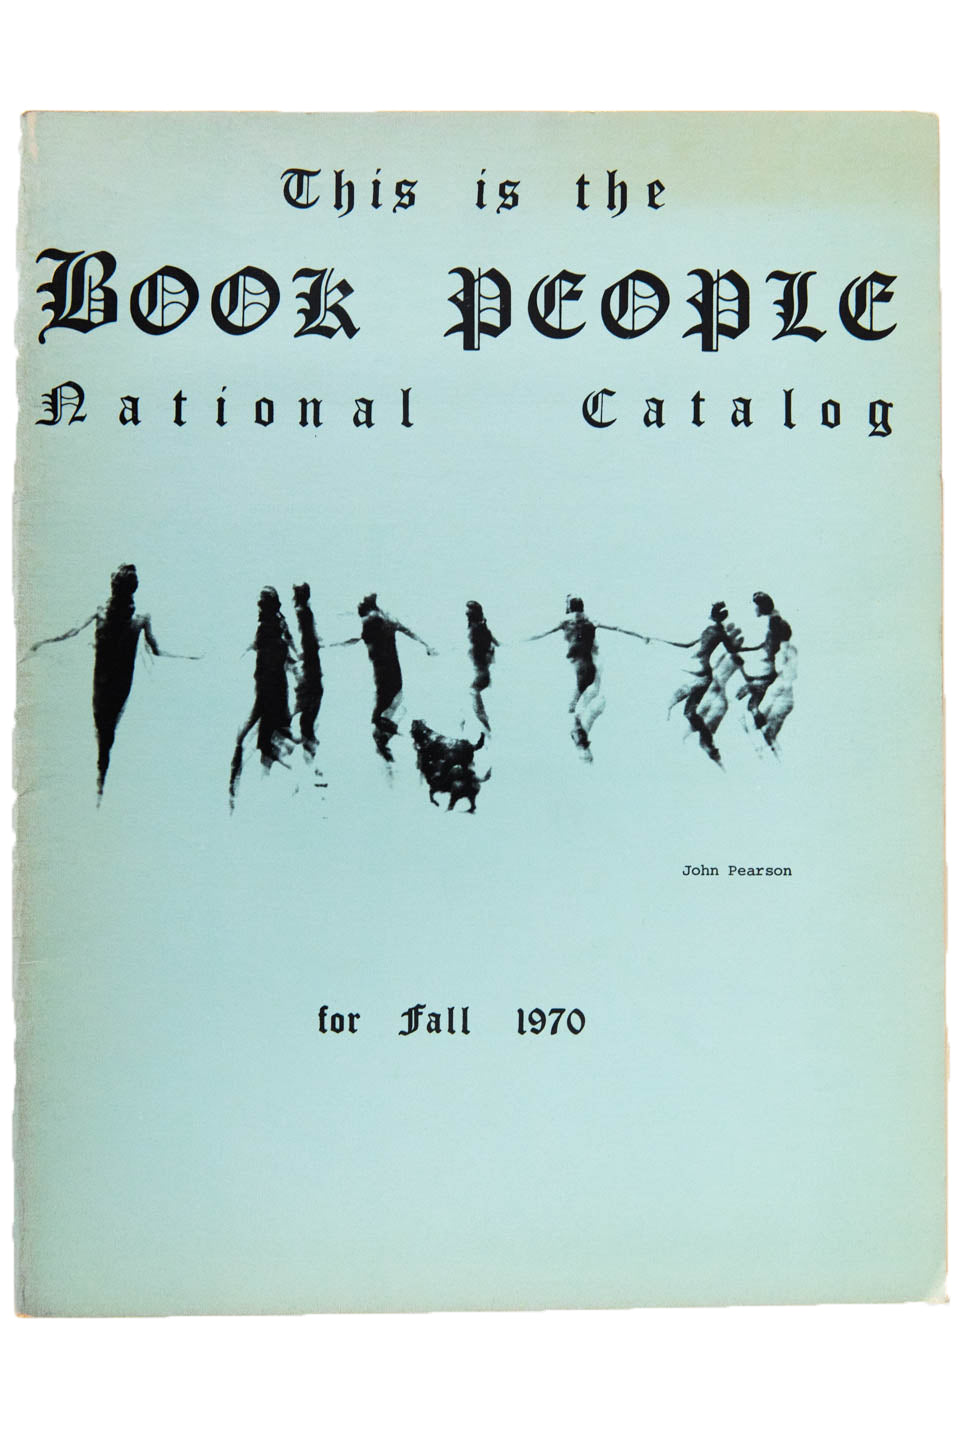 BOOK PEOPLE | Fall 1970